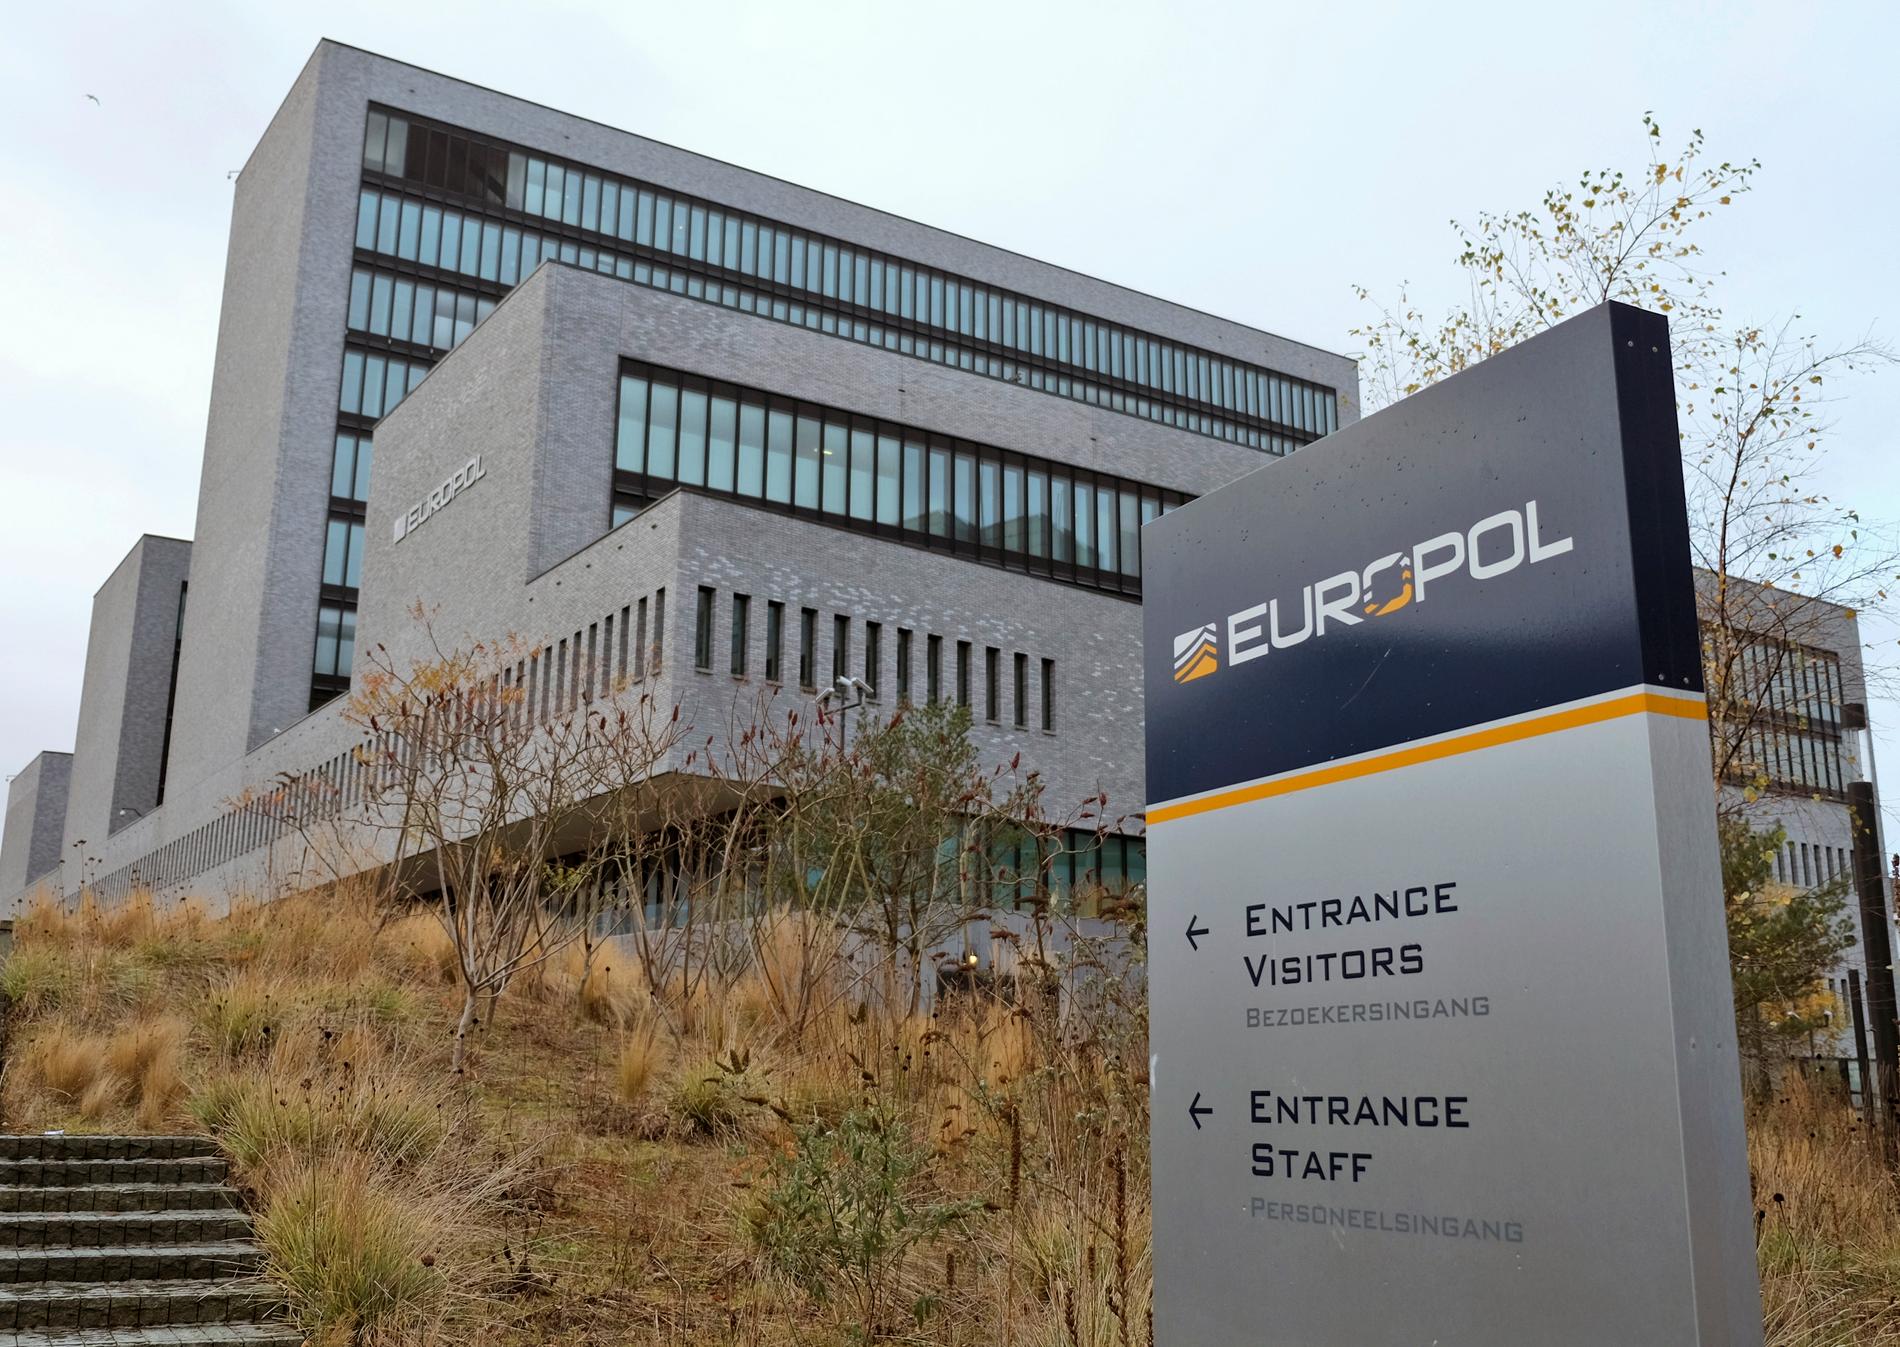 Svensk polis fick via Europol tillgång till material från Encrochat, ett krypterat kommunikationsnätverk som bland annat används av kriminella, vilket ledde fram till gripandet. Arkivbild.